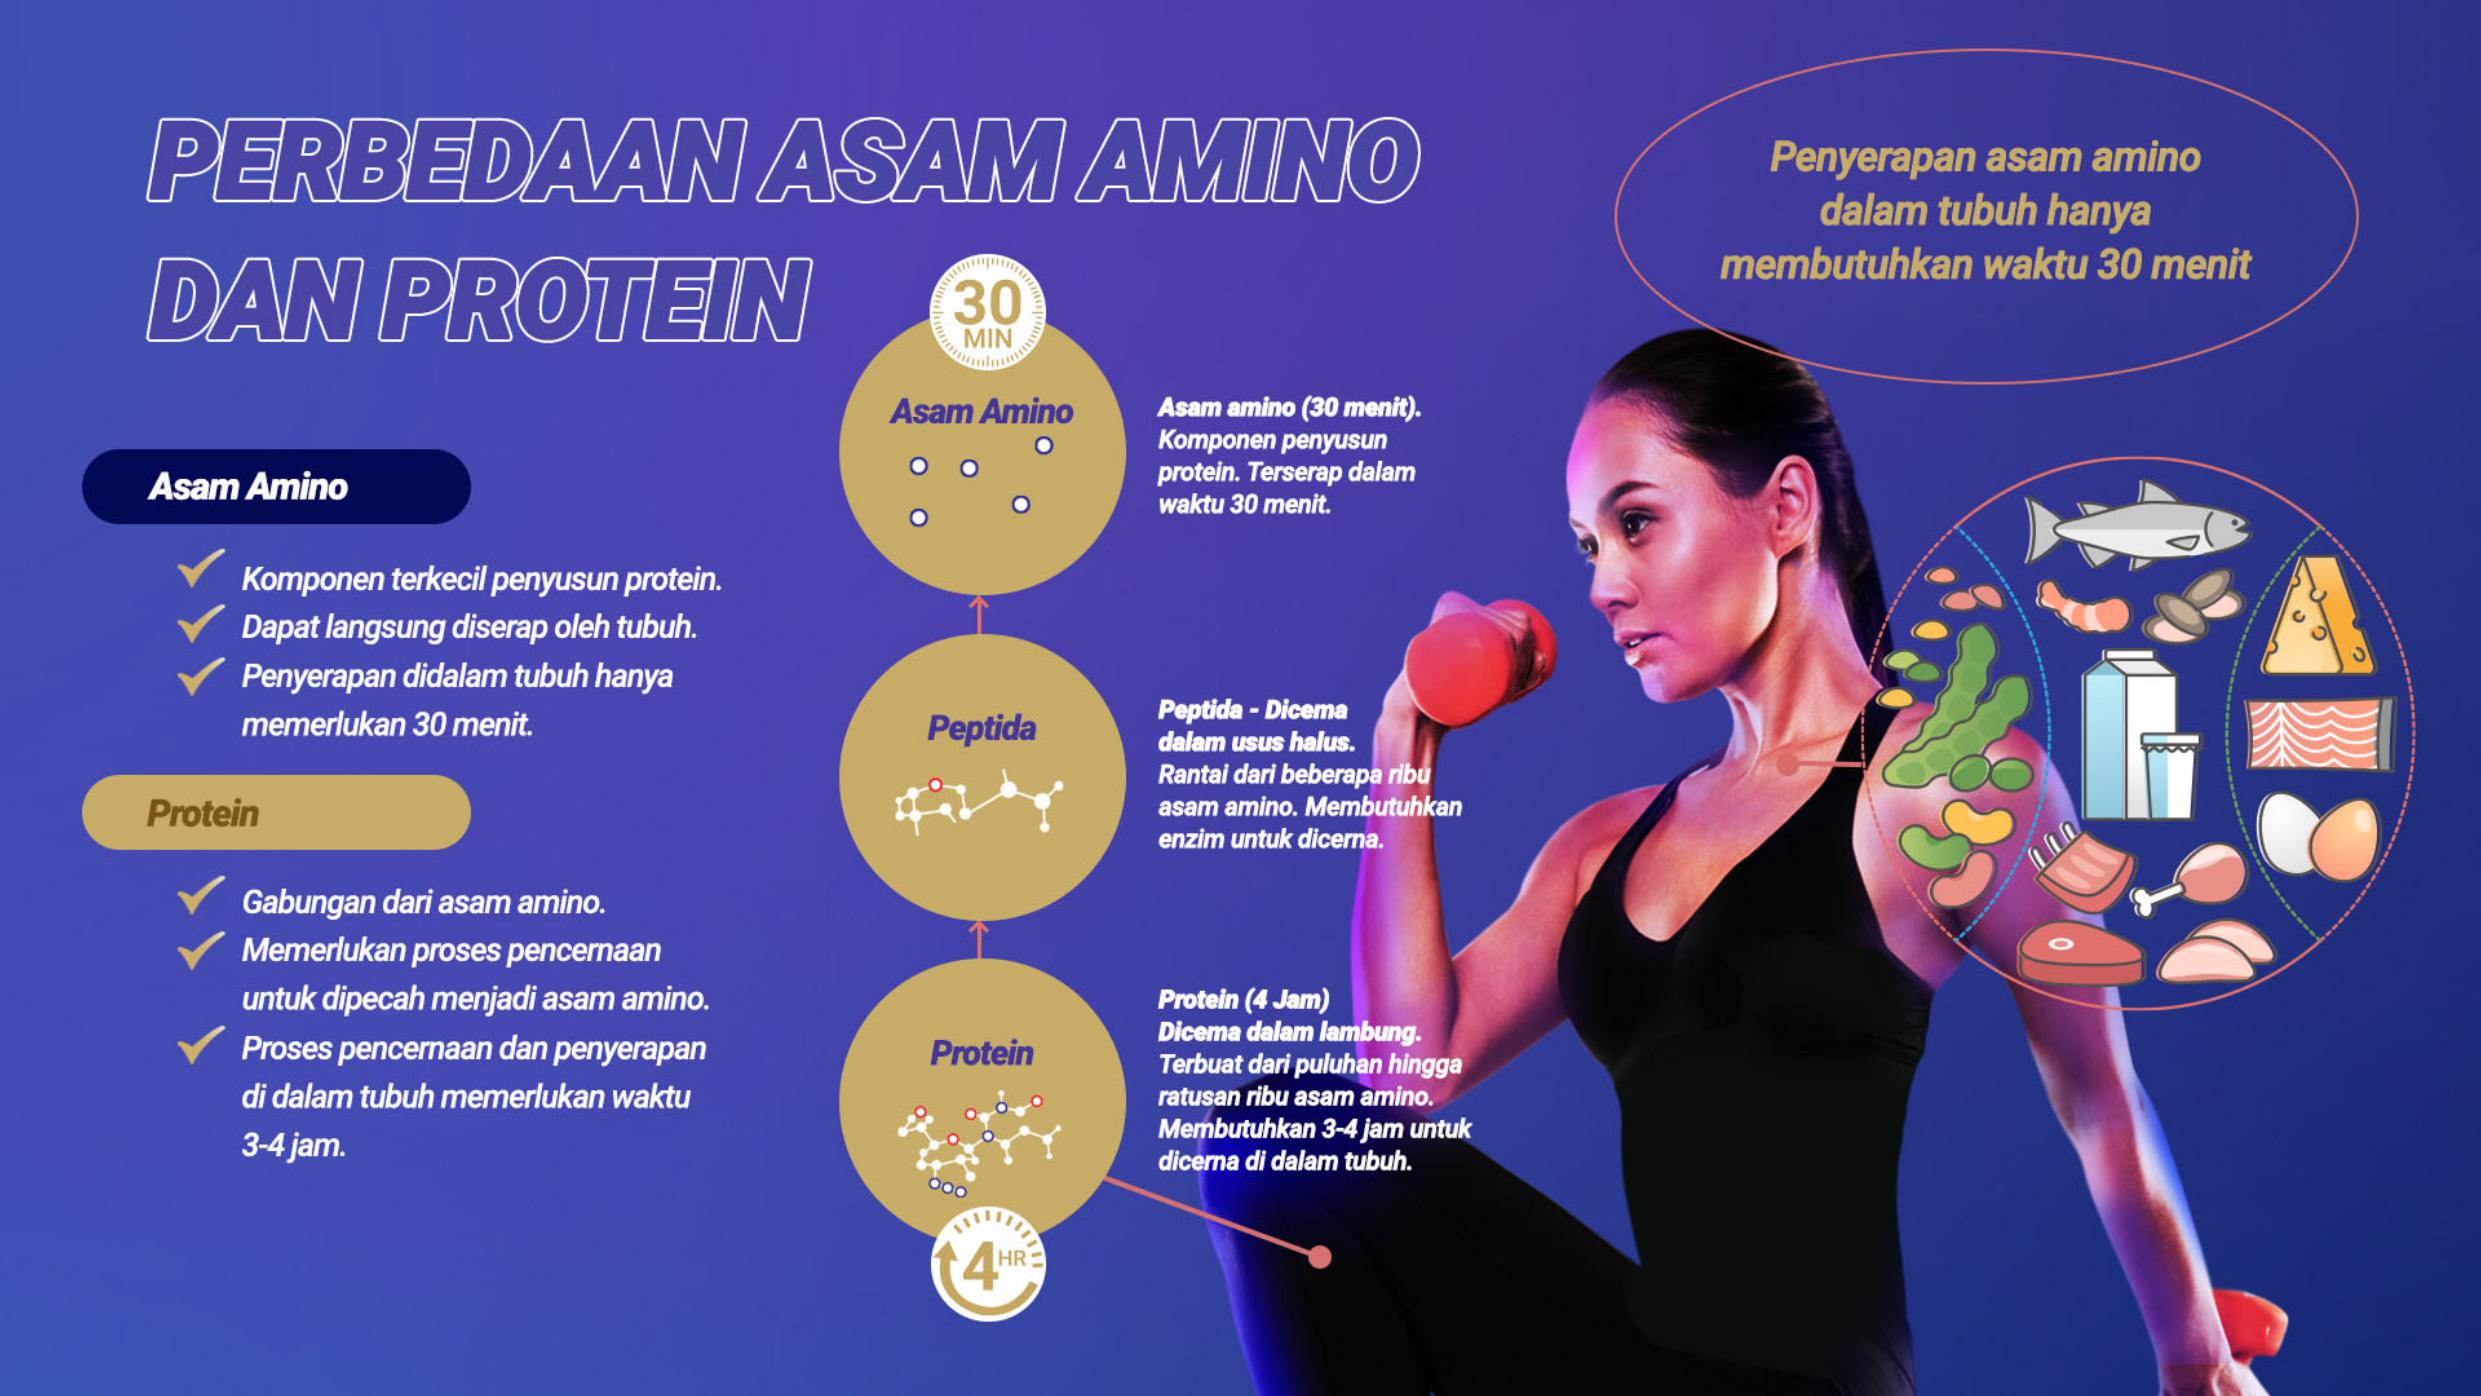 Perbedaan Asam Amino dan Protein